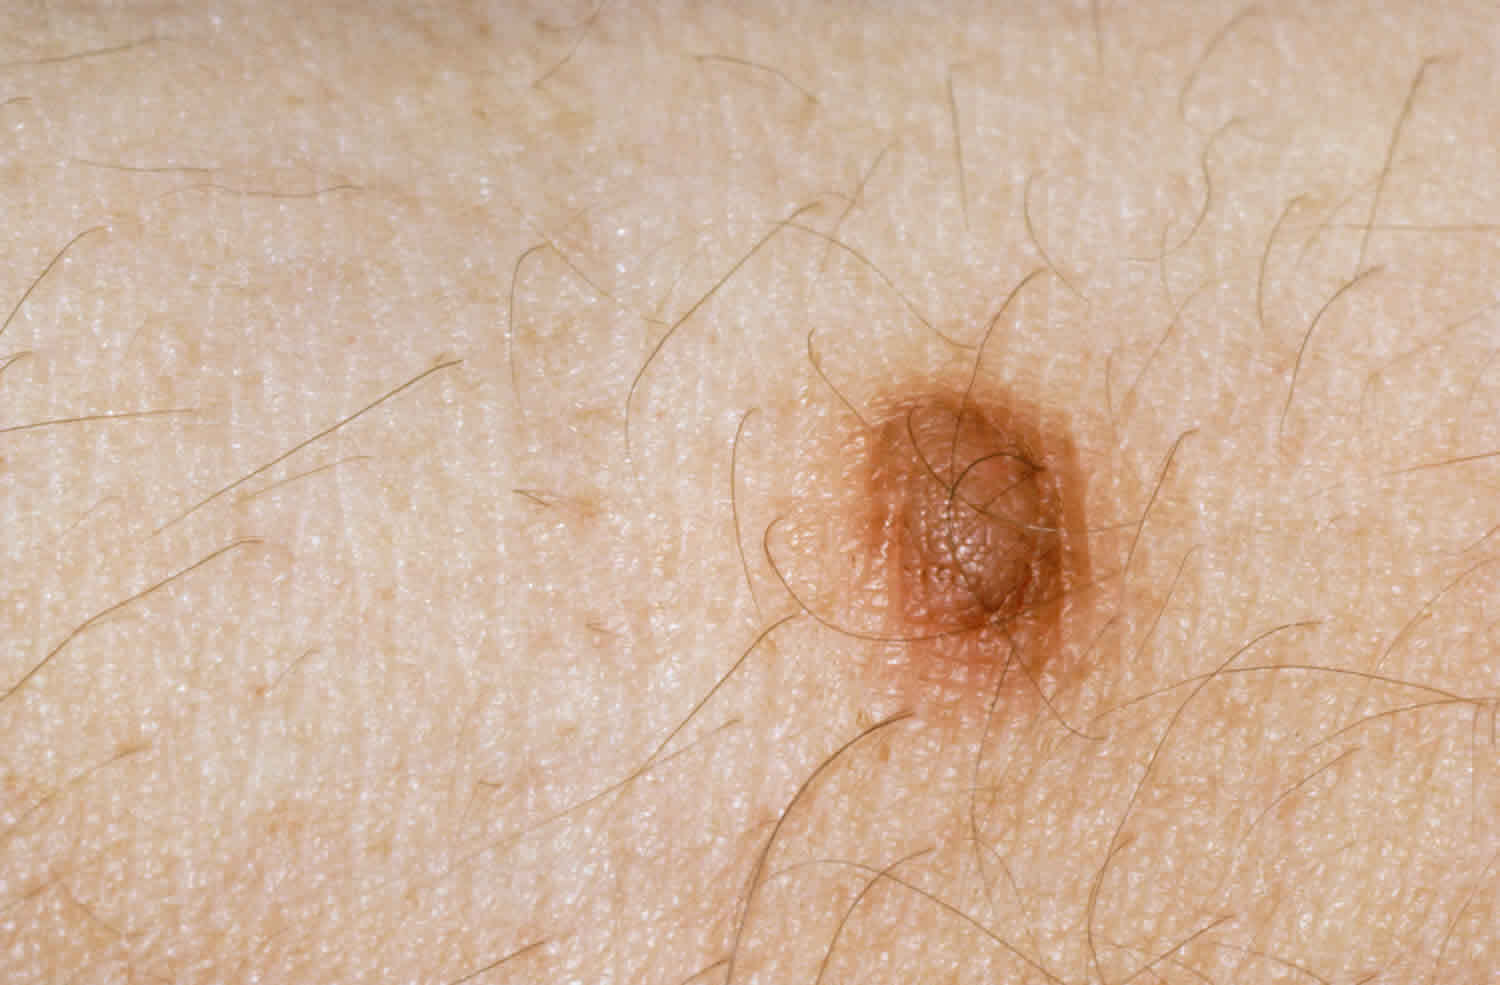 皮肤纤维瘤是什么?它会恶变吗?